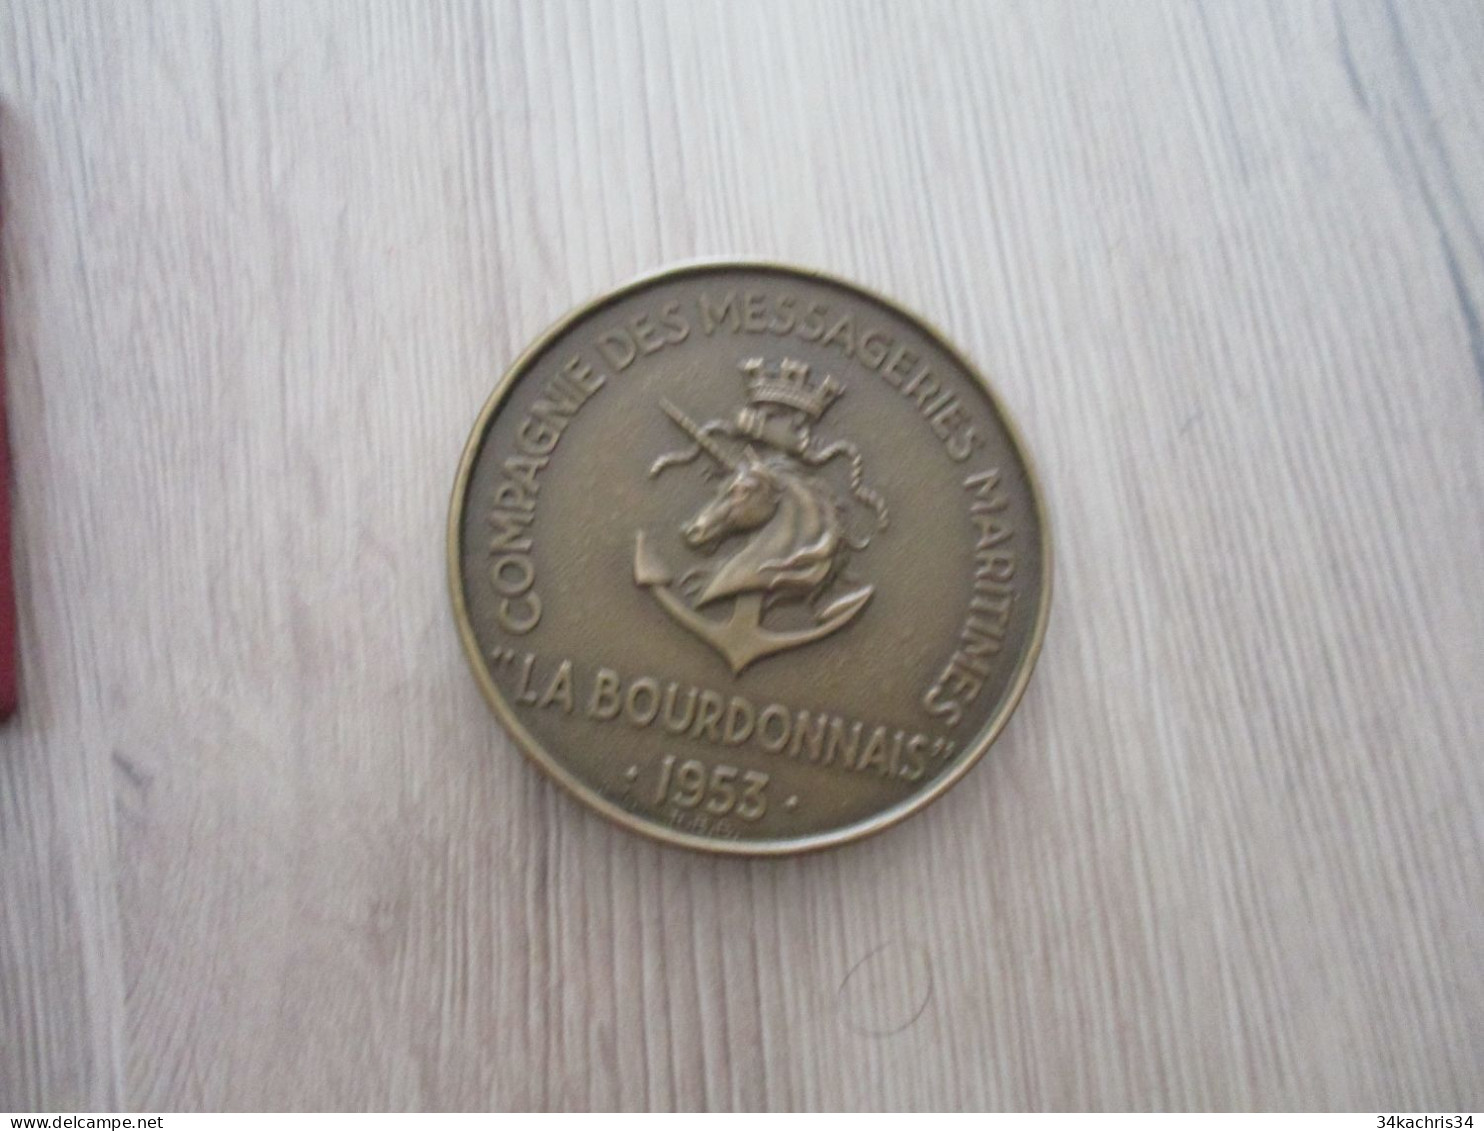 Médaille De Table La Bourdonnais Compagnies Messageries Maritimes 1953 5.5 Diam 100g Environs Dans Sa Boite - Maritime Decoration